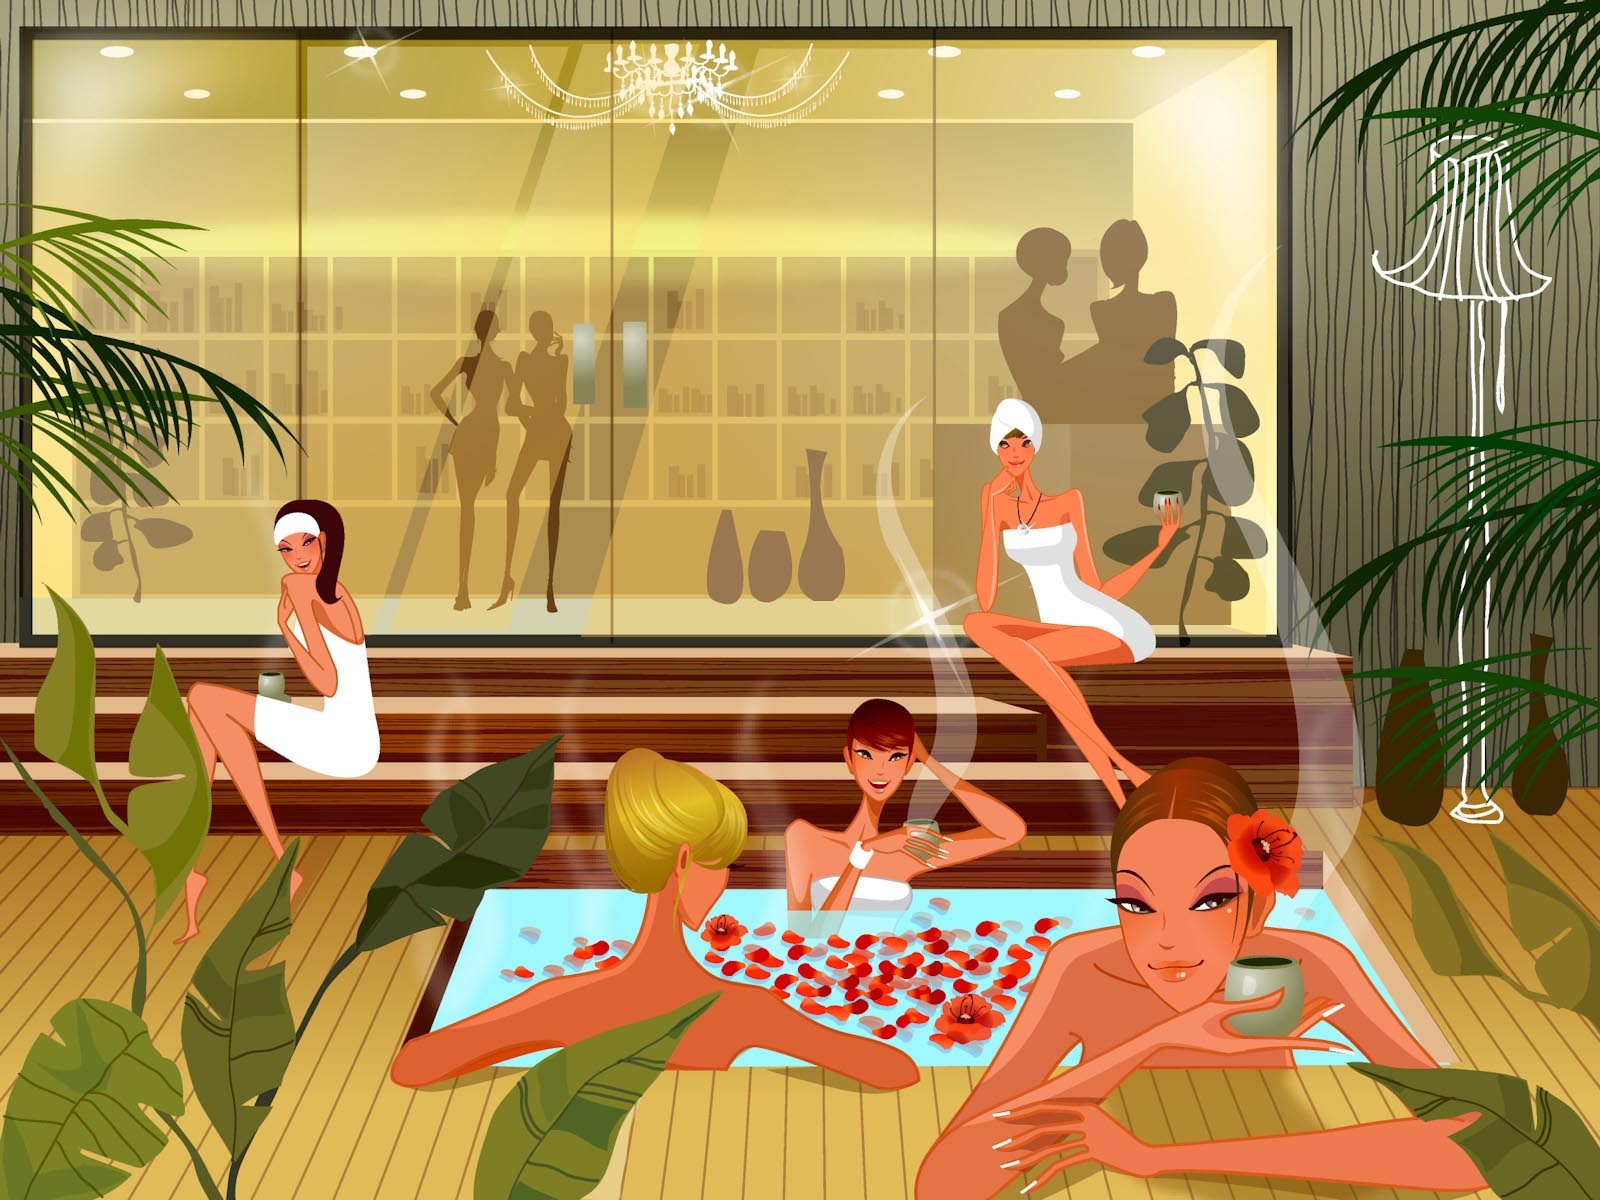 General 1600x1200 nude sauna cartoon artwork women group of women leaves plants women indoors flower in hair sitting